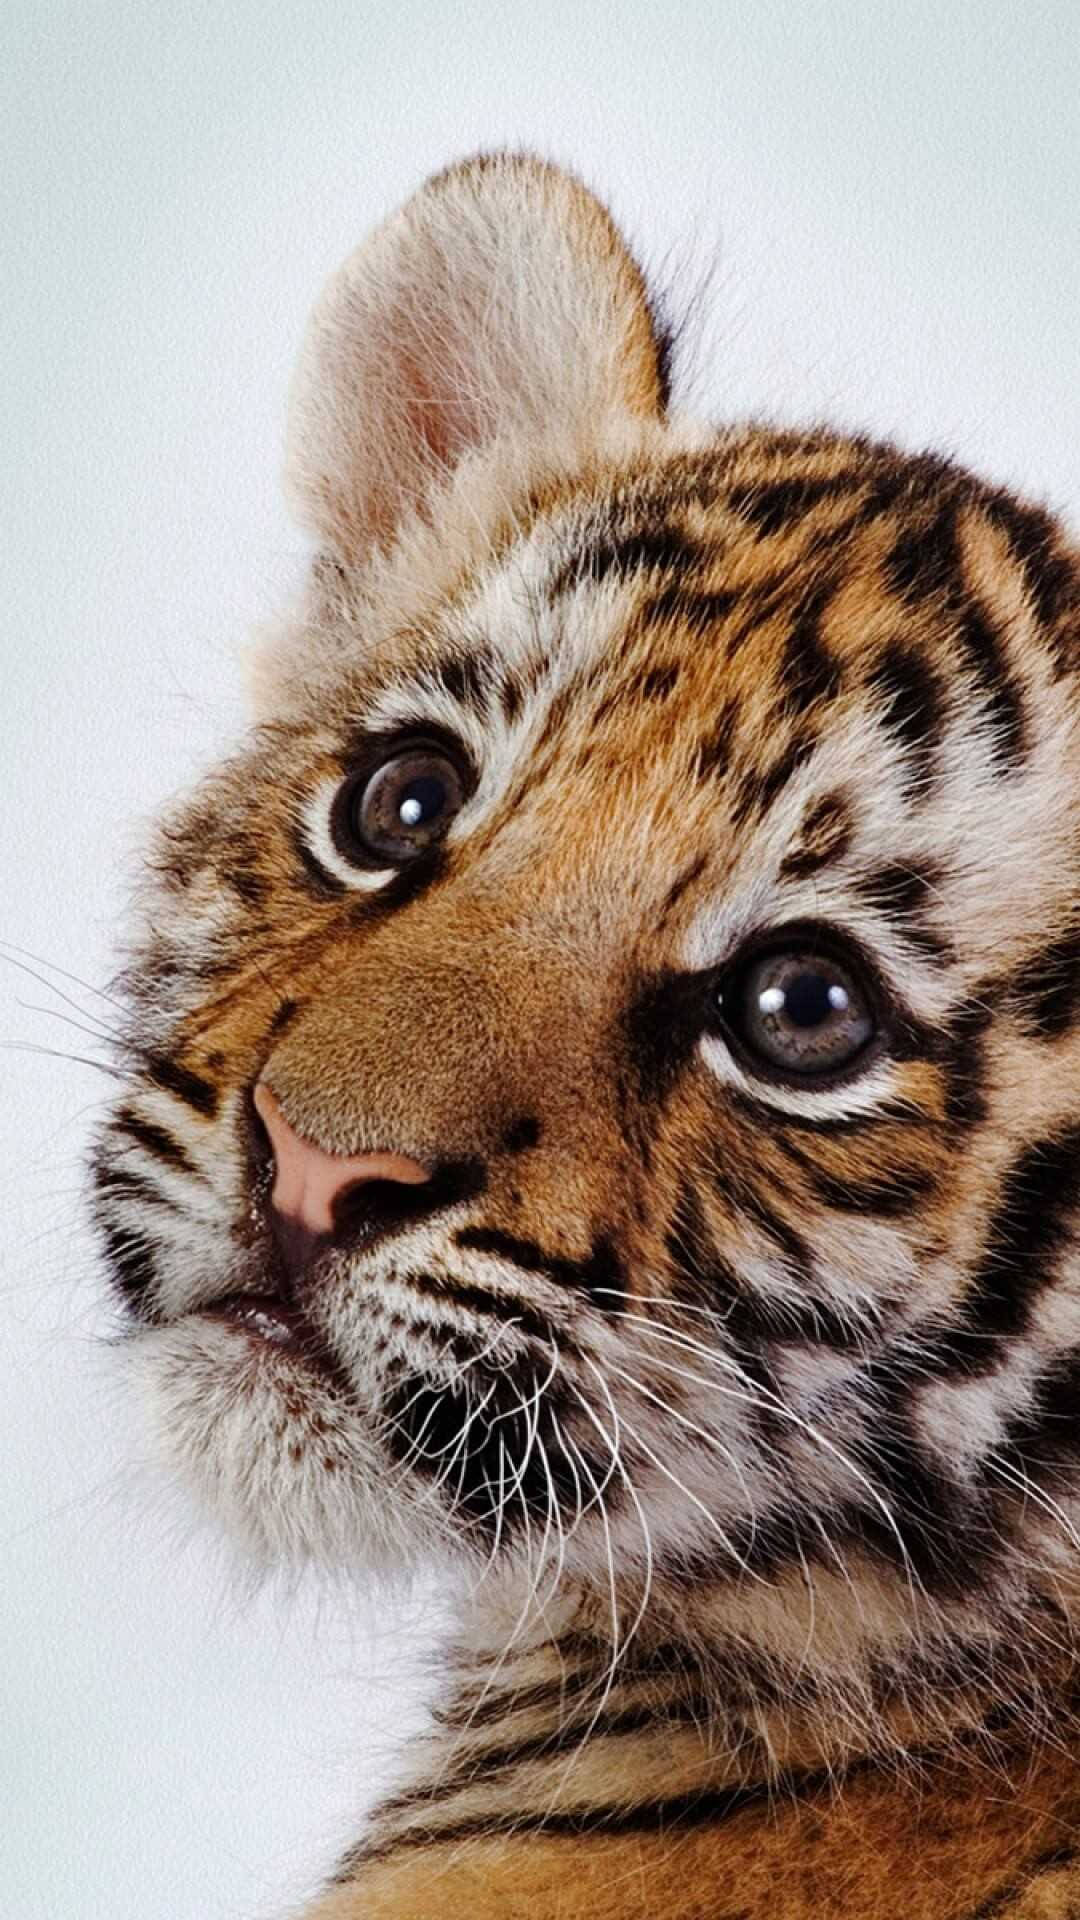 Baby Tiger Close-Up Wallpaper